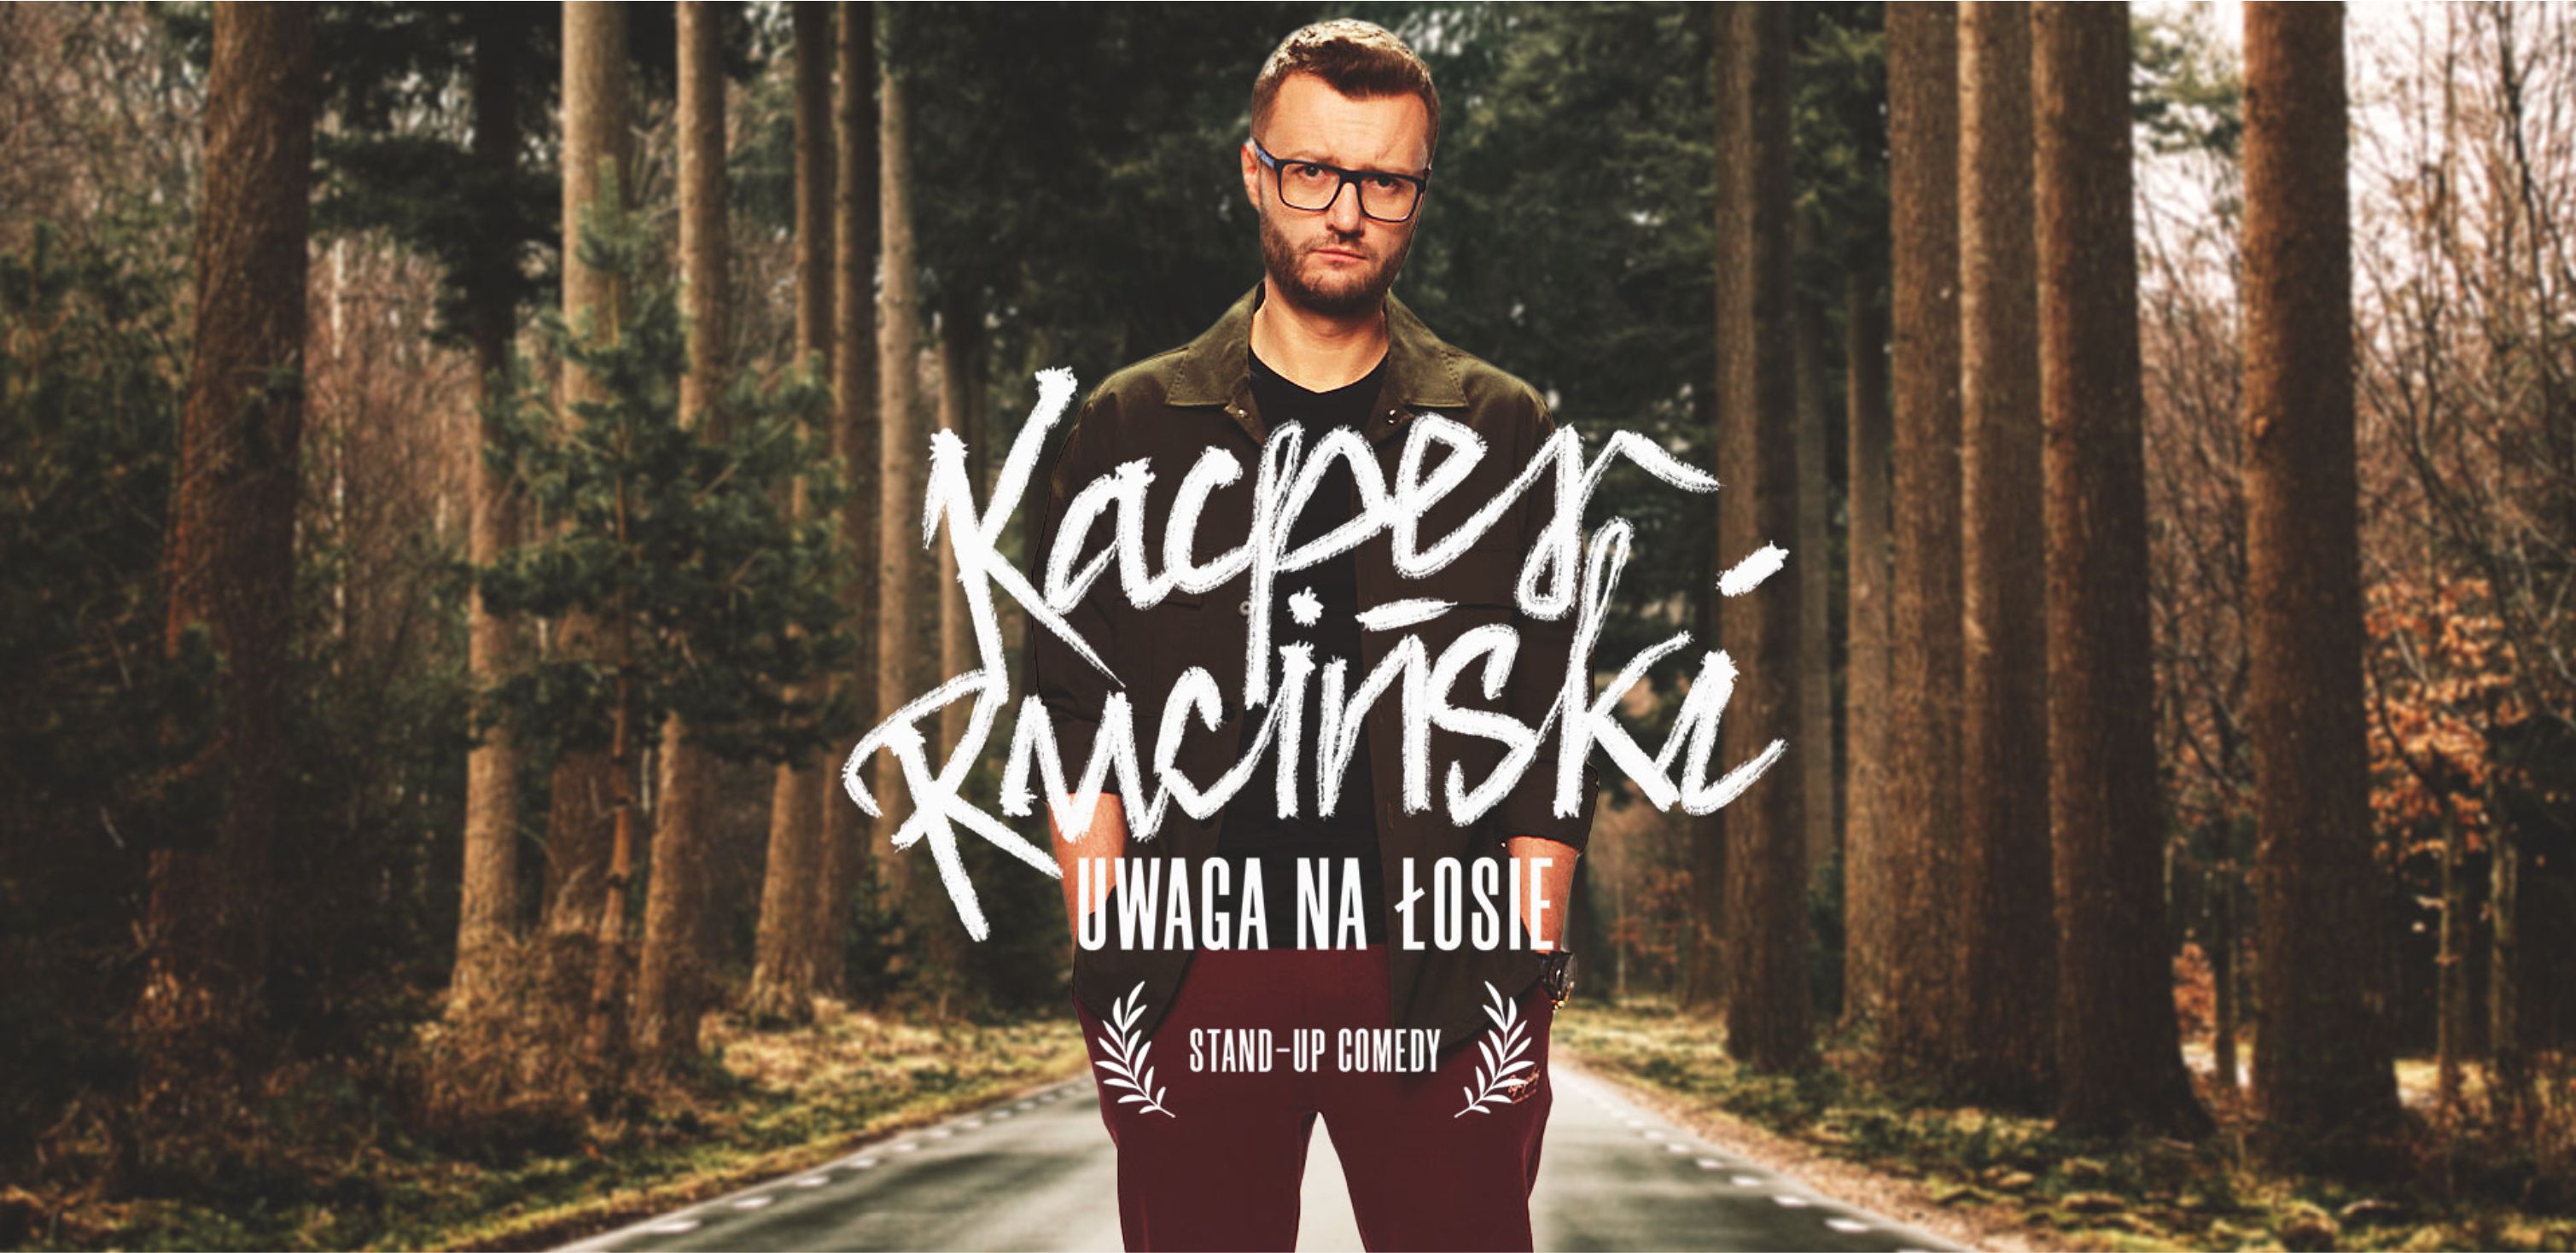 baner z wizerunkiem Kacpra Rucińskiego na tle lasu